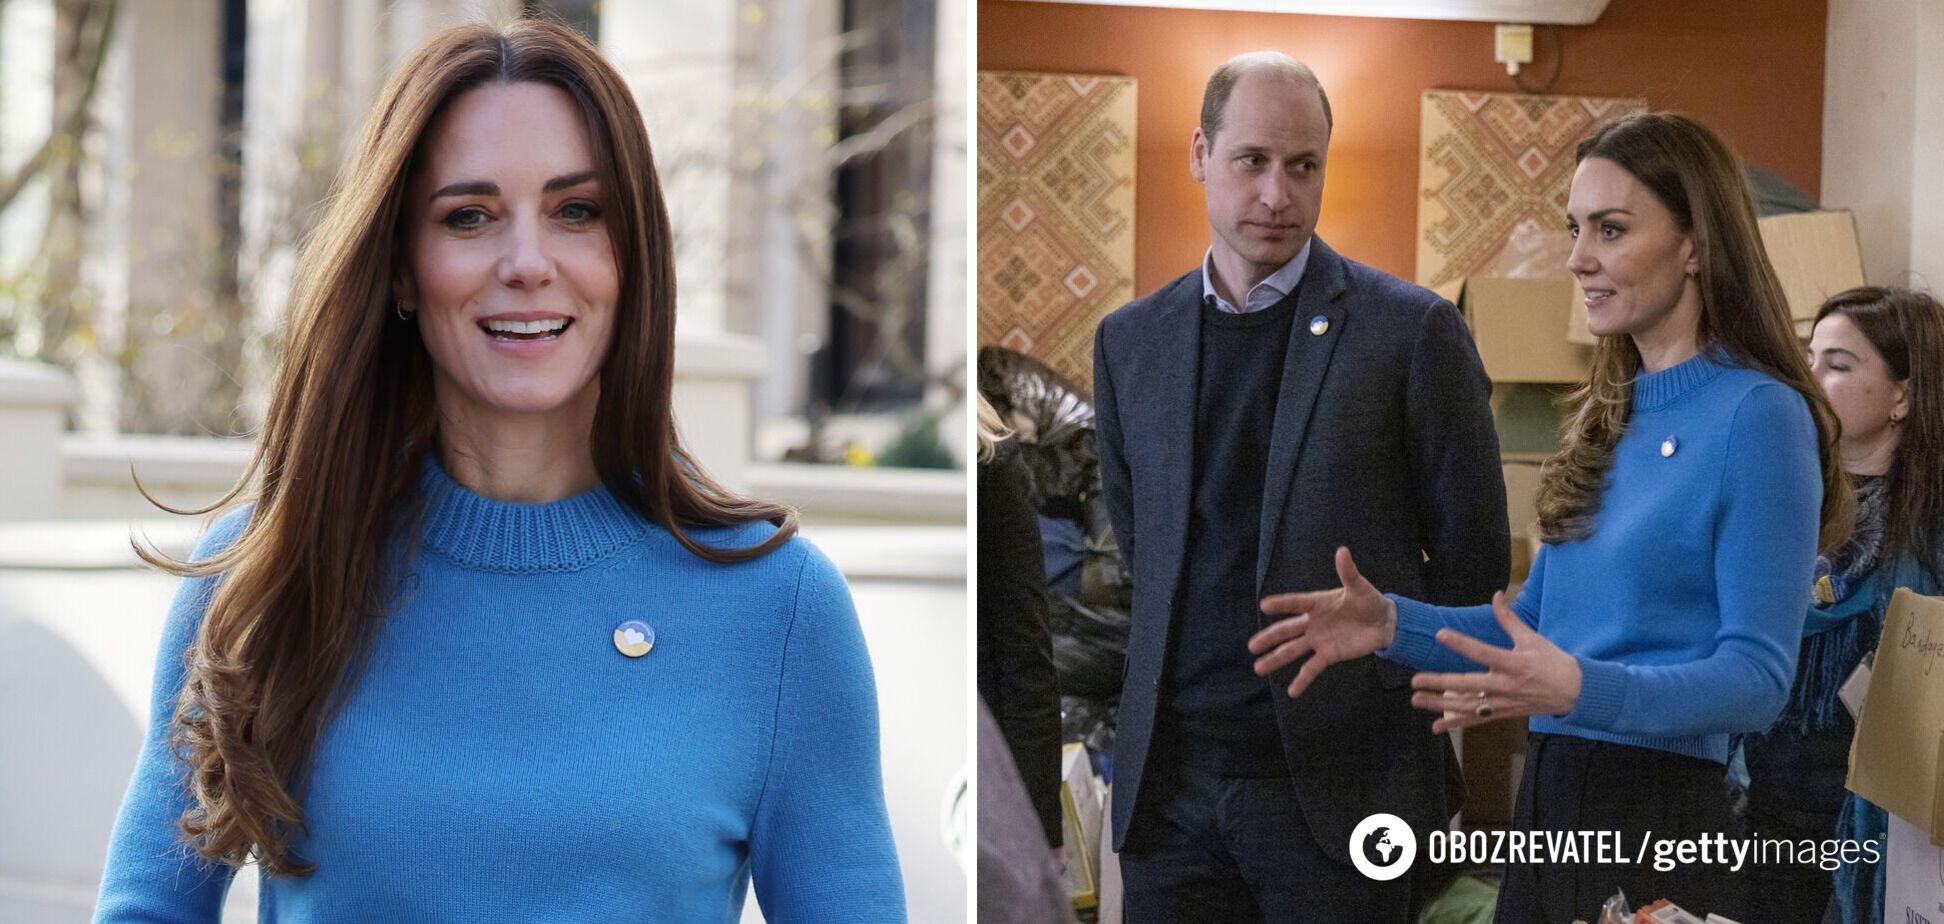 Кейт Миддлтон и принц Уильям выразили соболезнование украинцам: наши дети спрашивали о войне в Украине